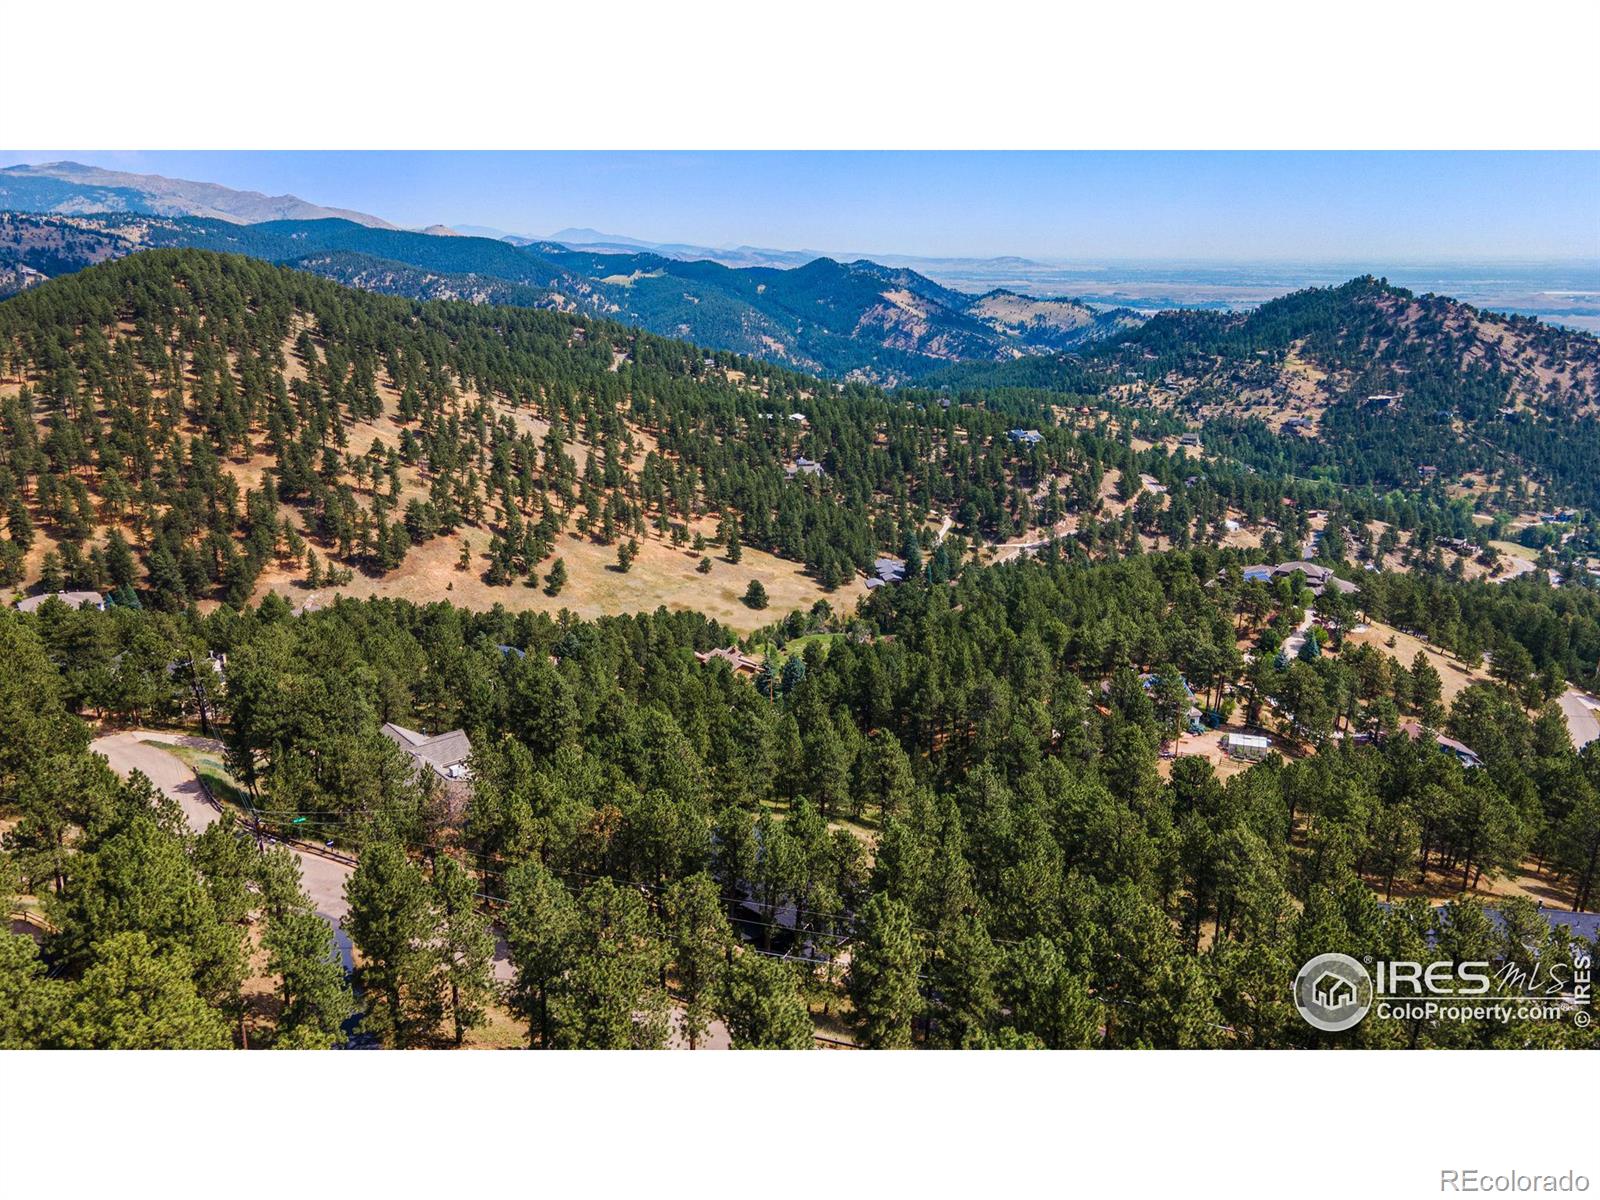 MLS Image #38 for 228  alpine way,boulder, Colorado